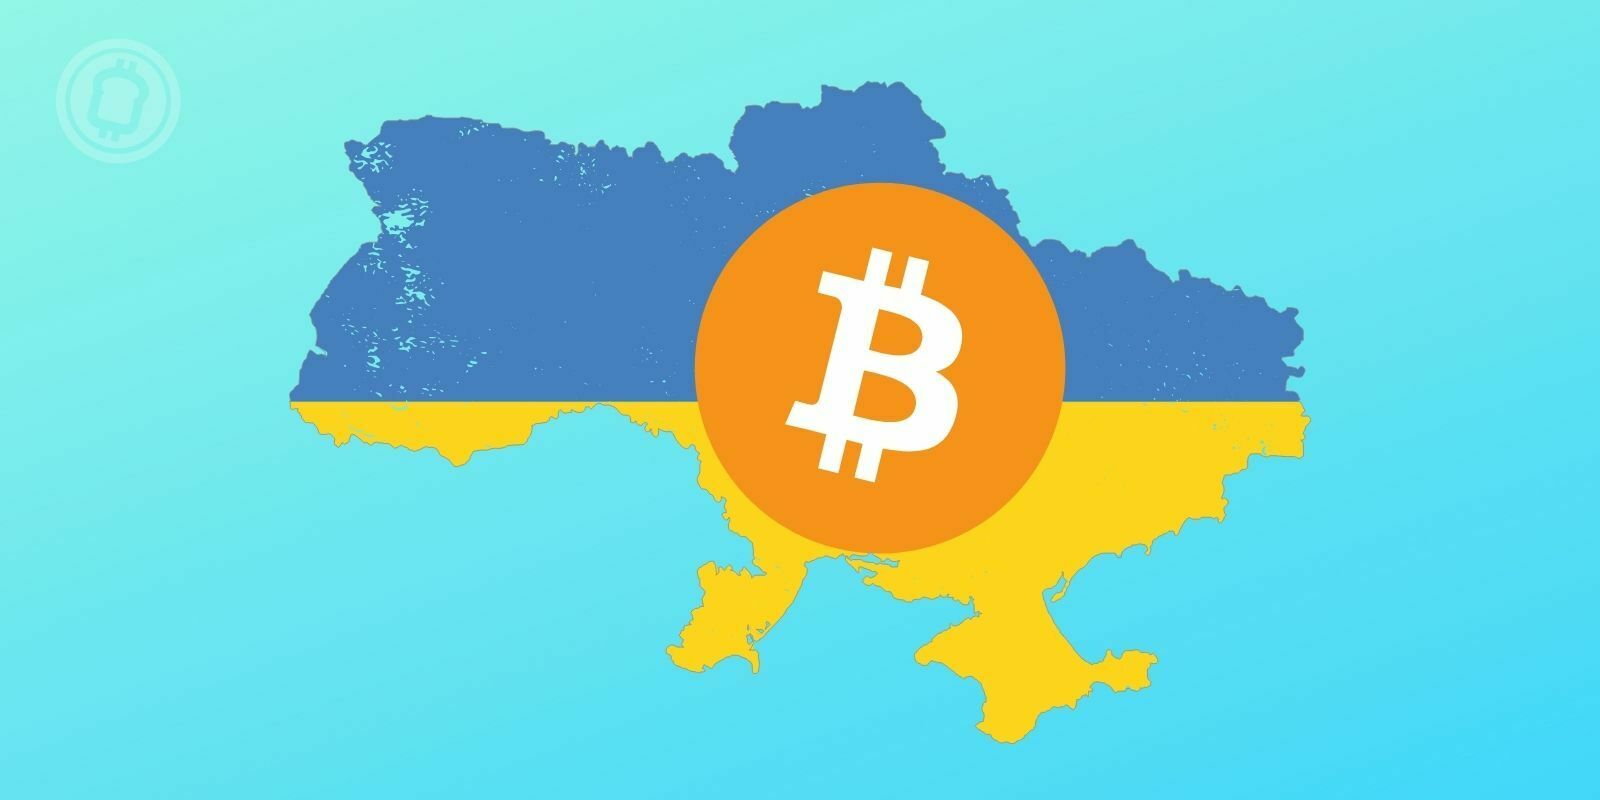 Les transactions en cryptomonnaies explosent en Ukraine suite aux restrictions de la Banque centrale